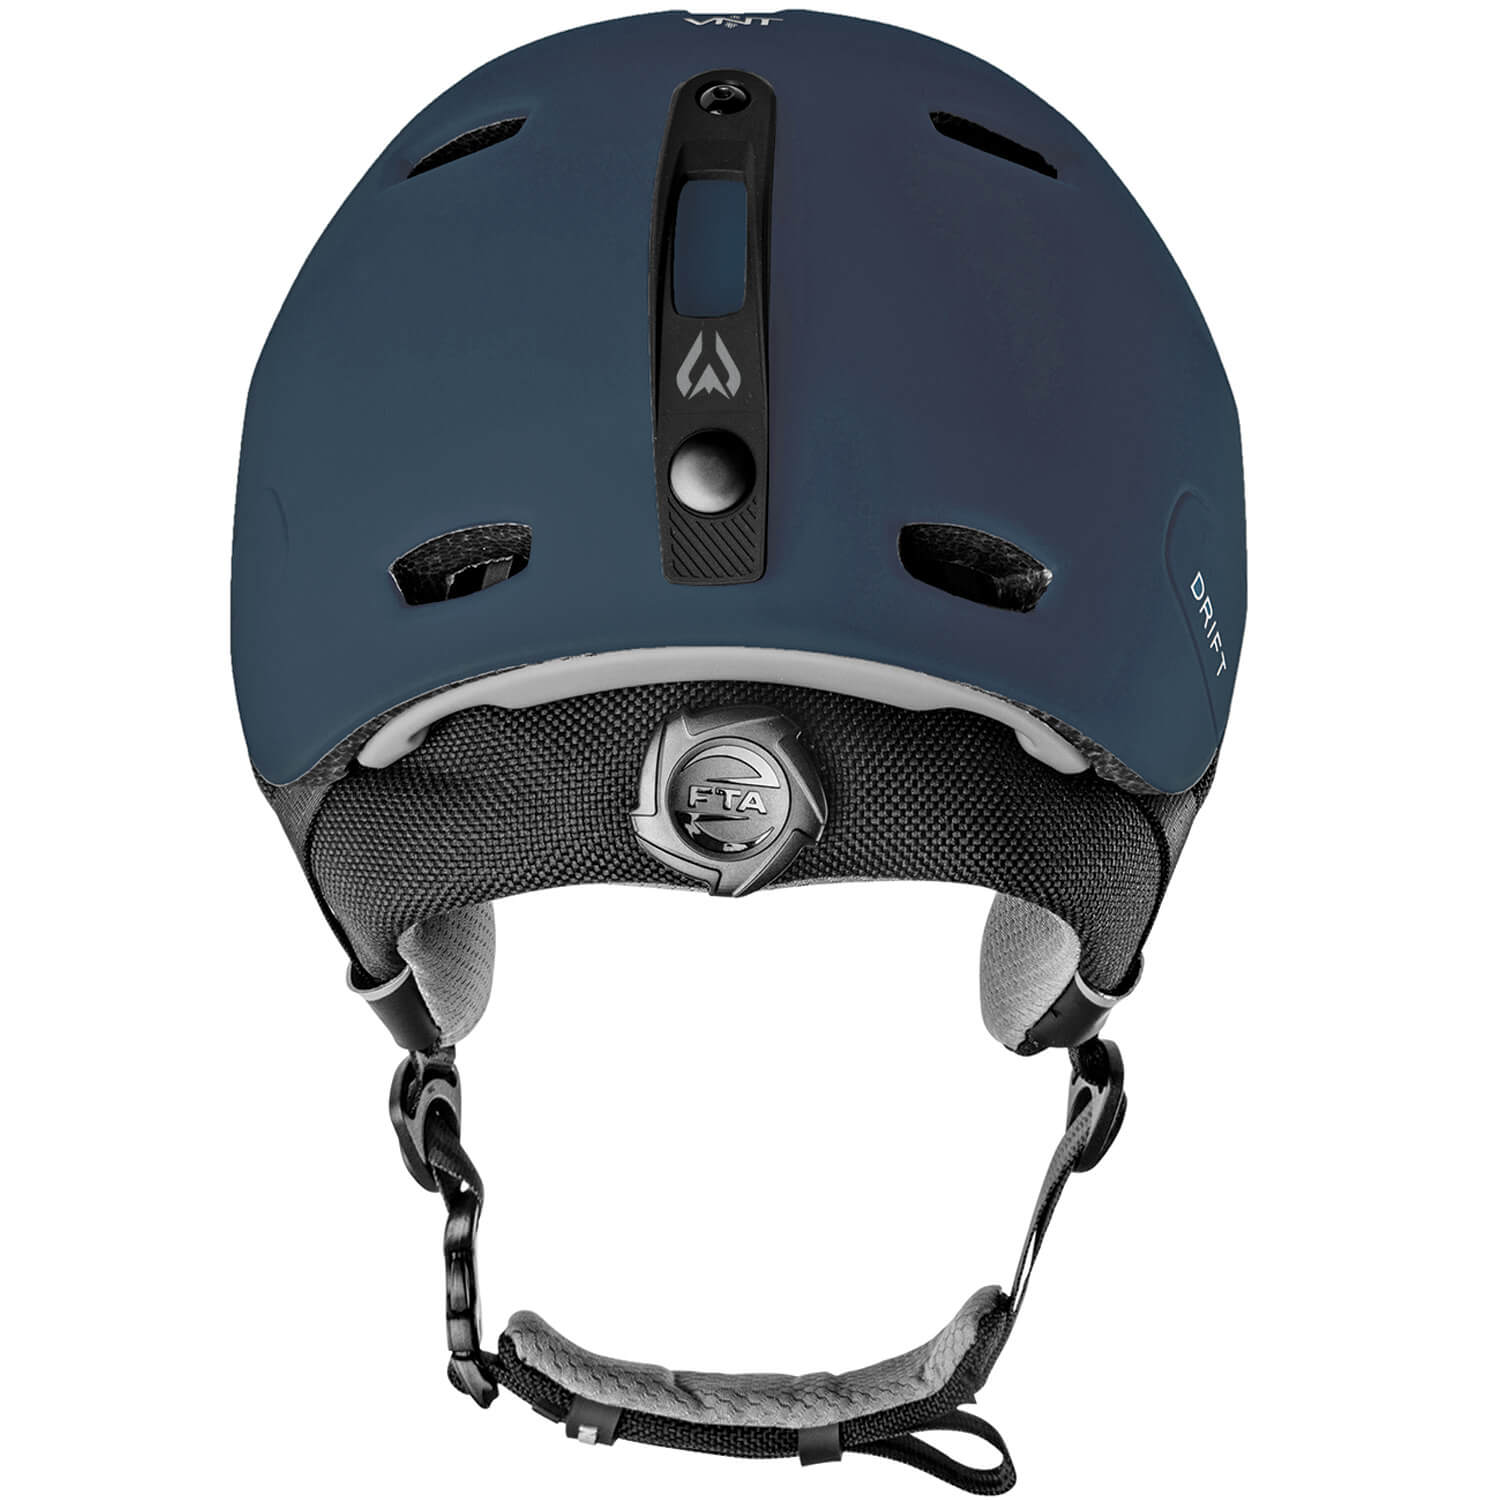 Drift Snow Helmet